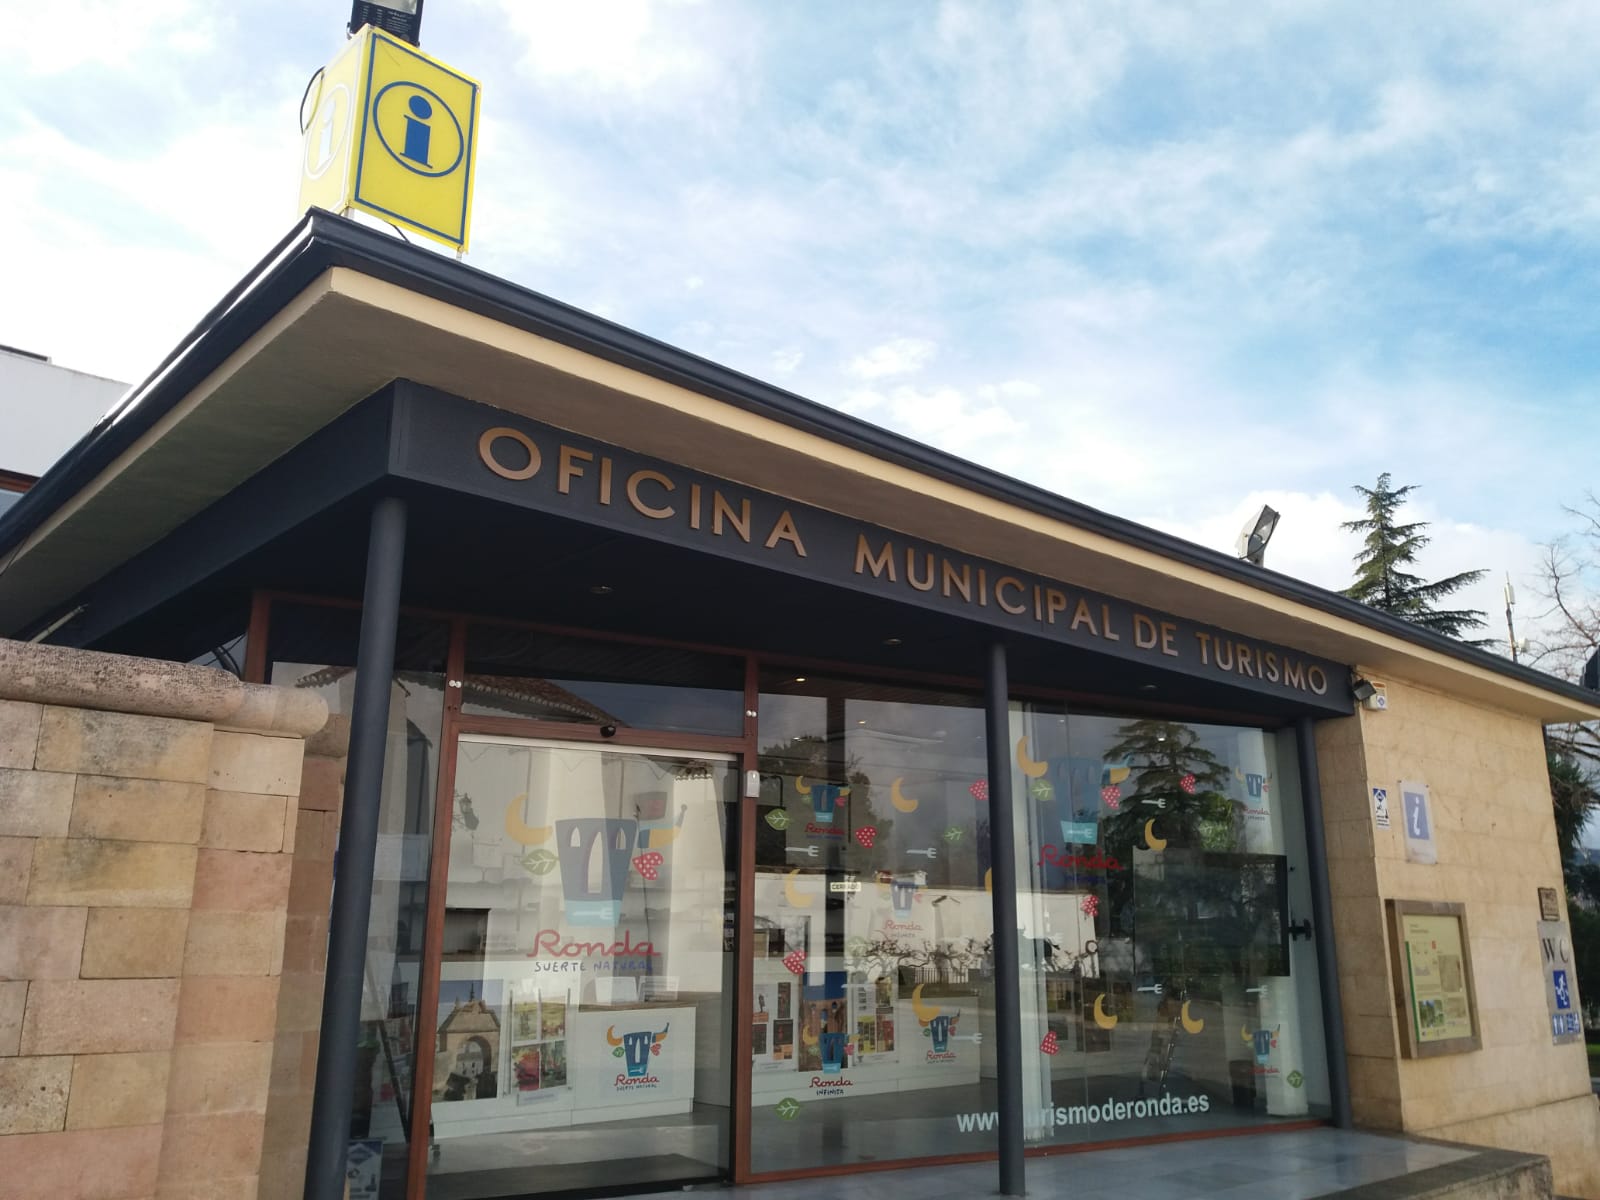 Ronda Municipal Tourist Office